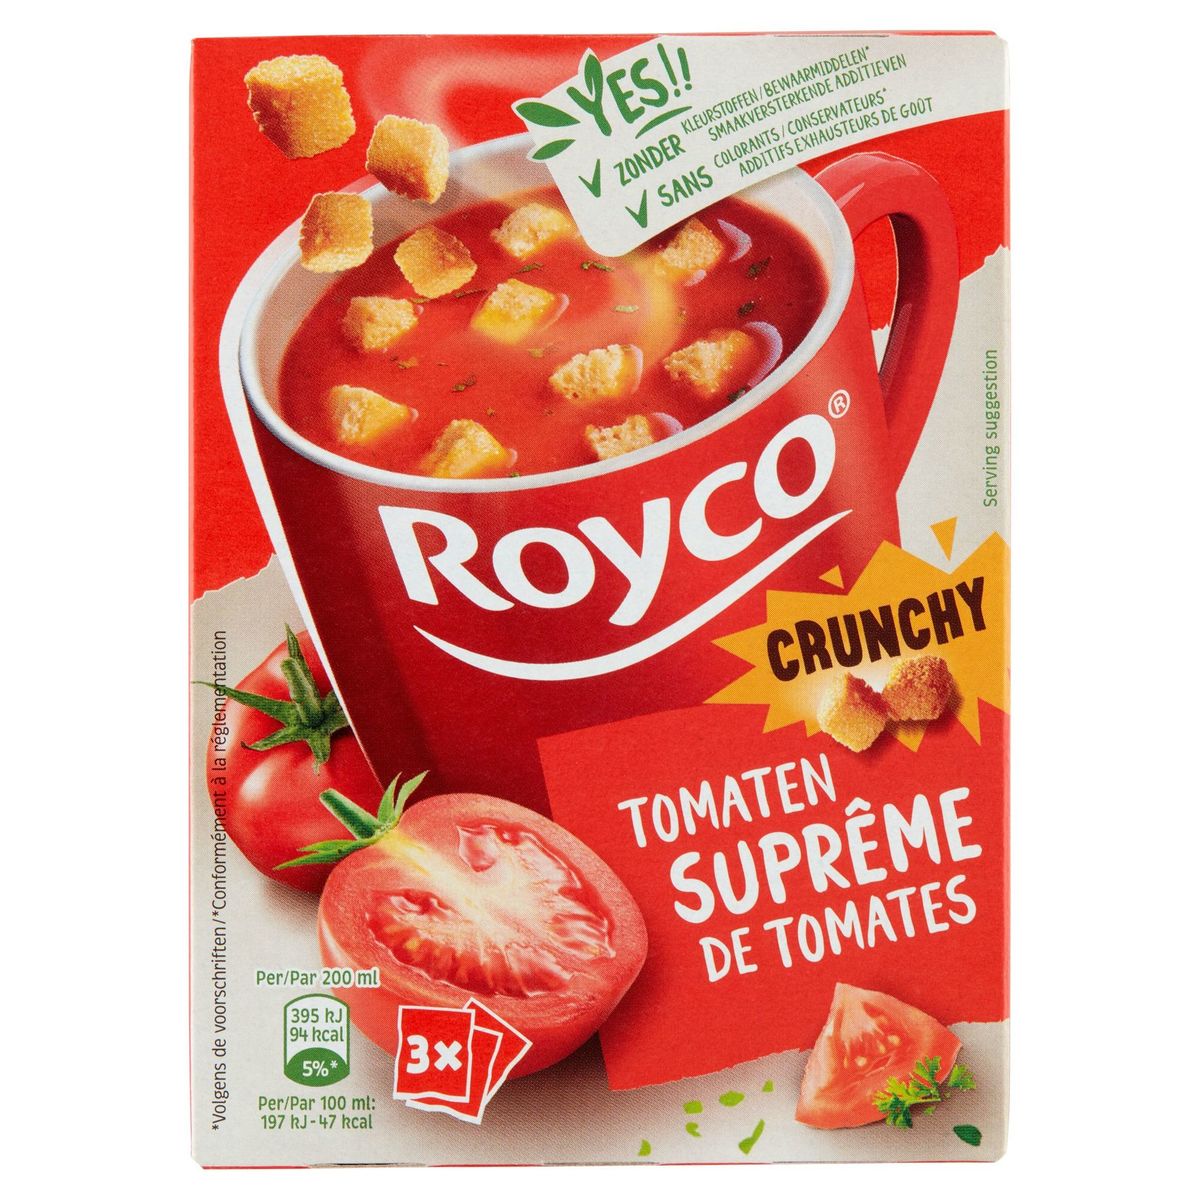 Royco Crunchy Suprême de Tomates 3 x 20.7 g